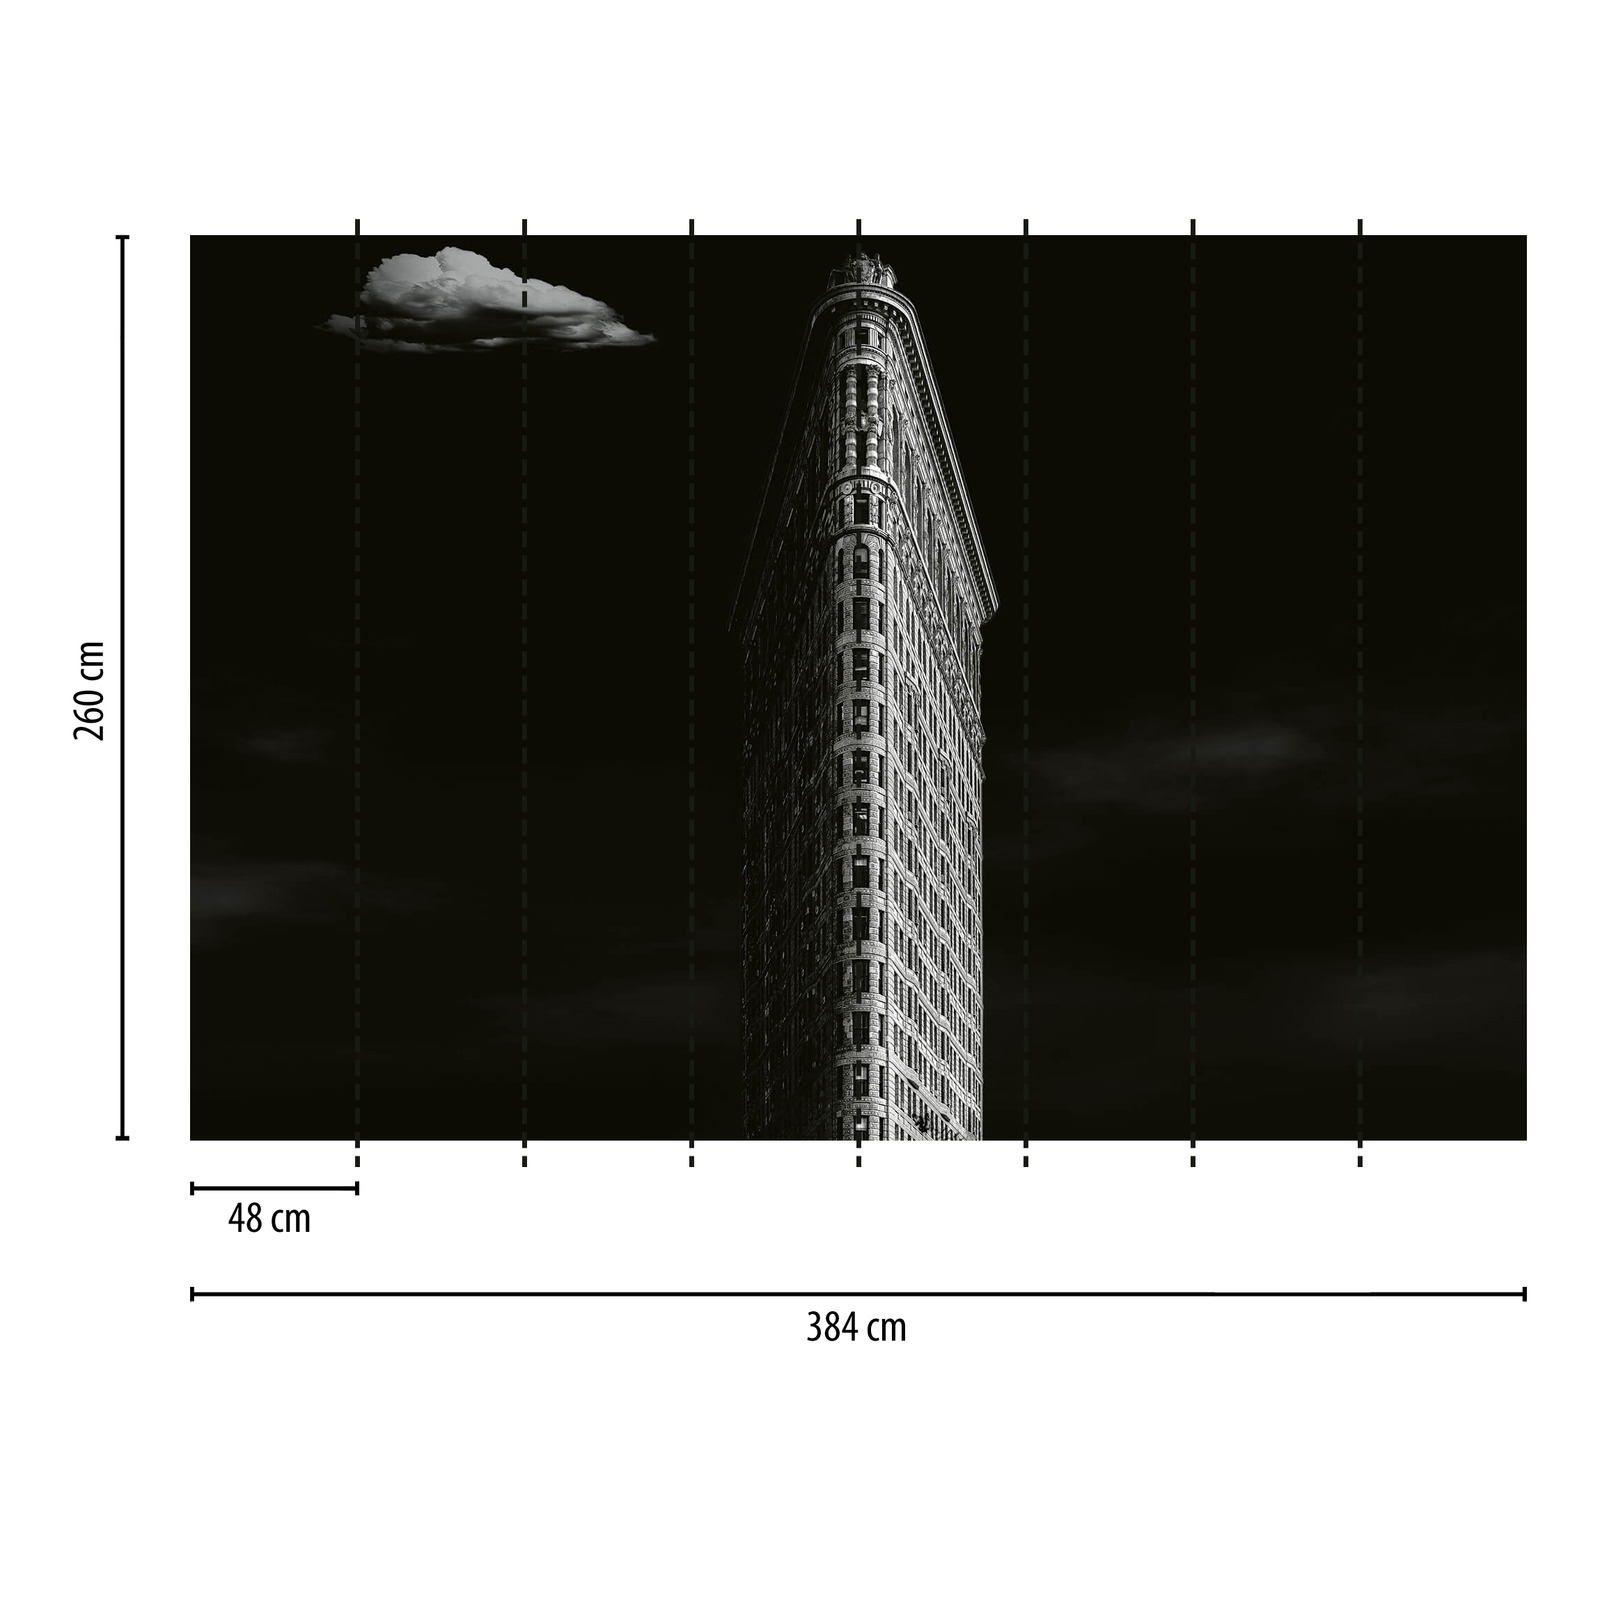             Carta da parati con grattacielo di New York - Nero, bianco, grigio
        